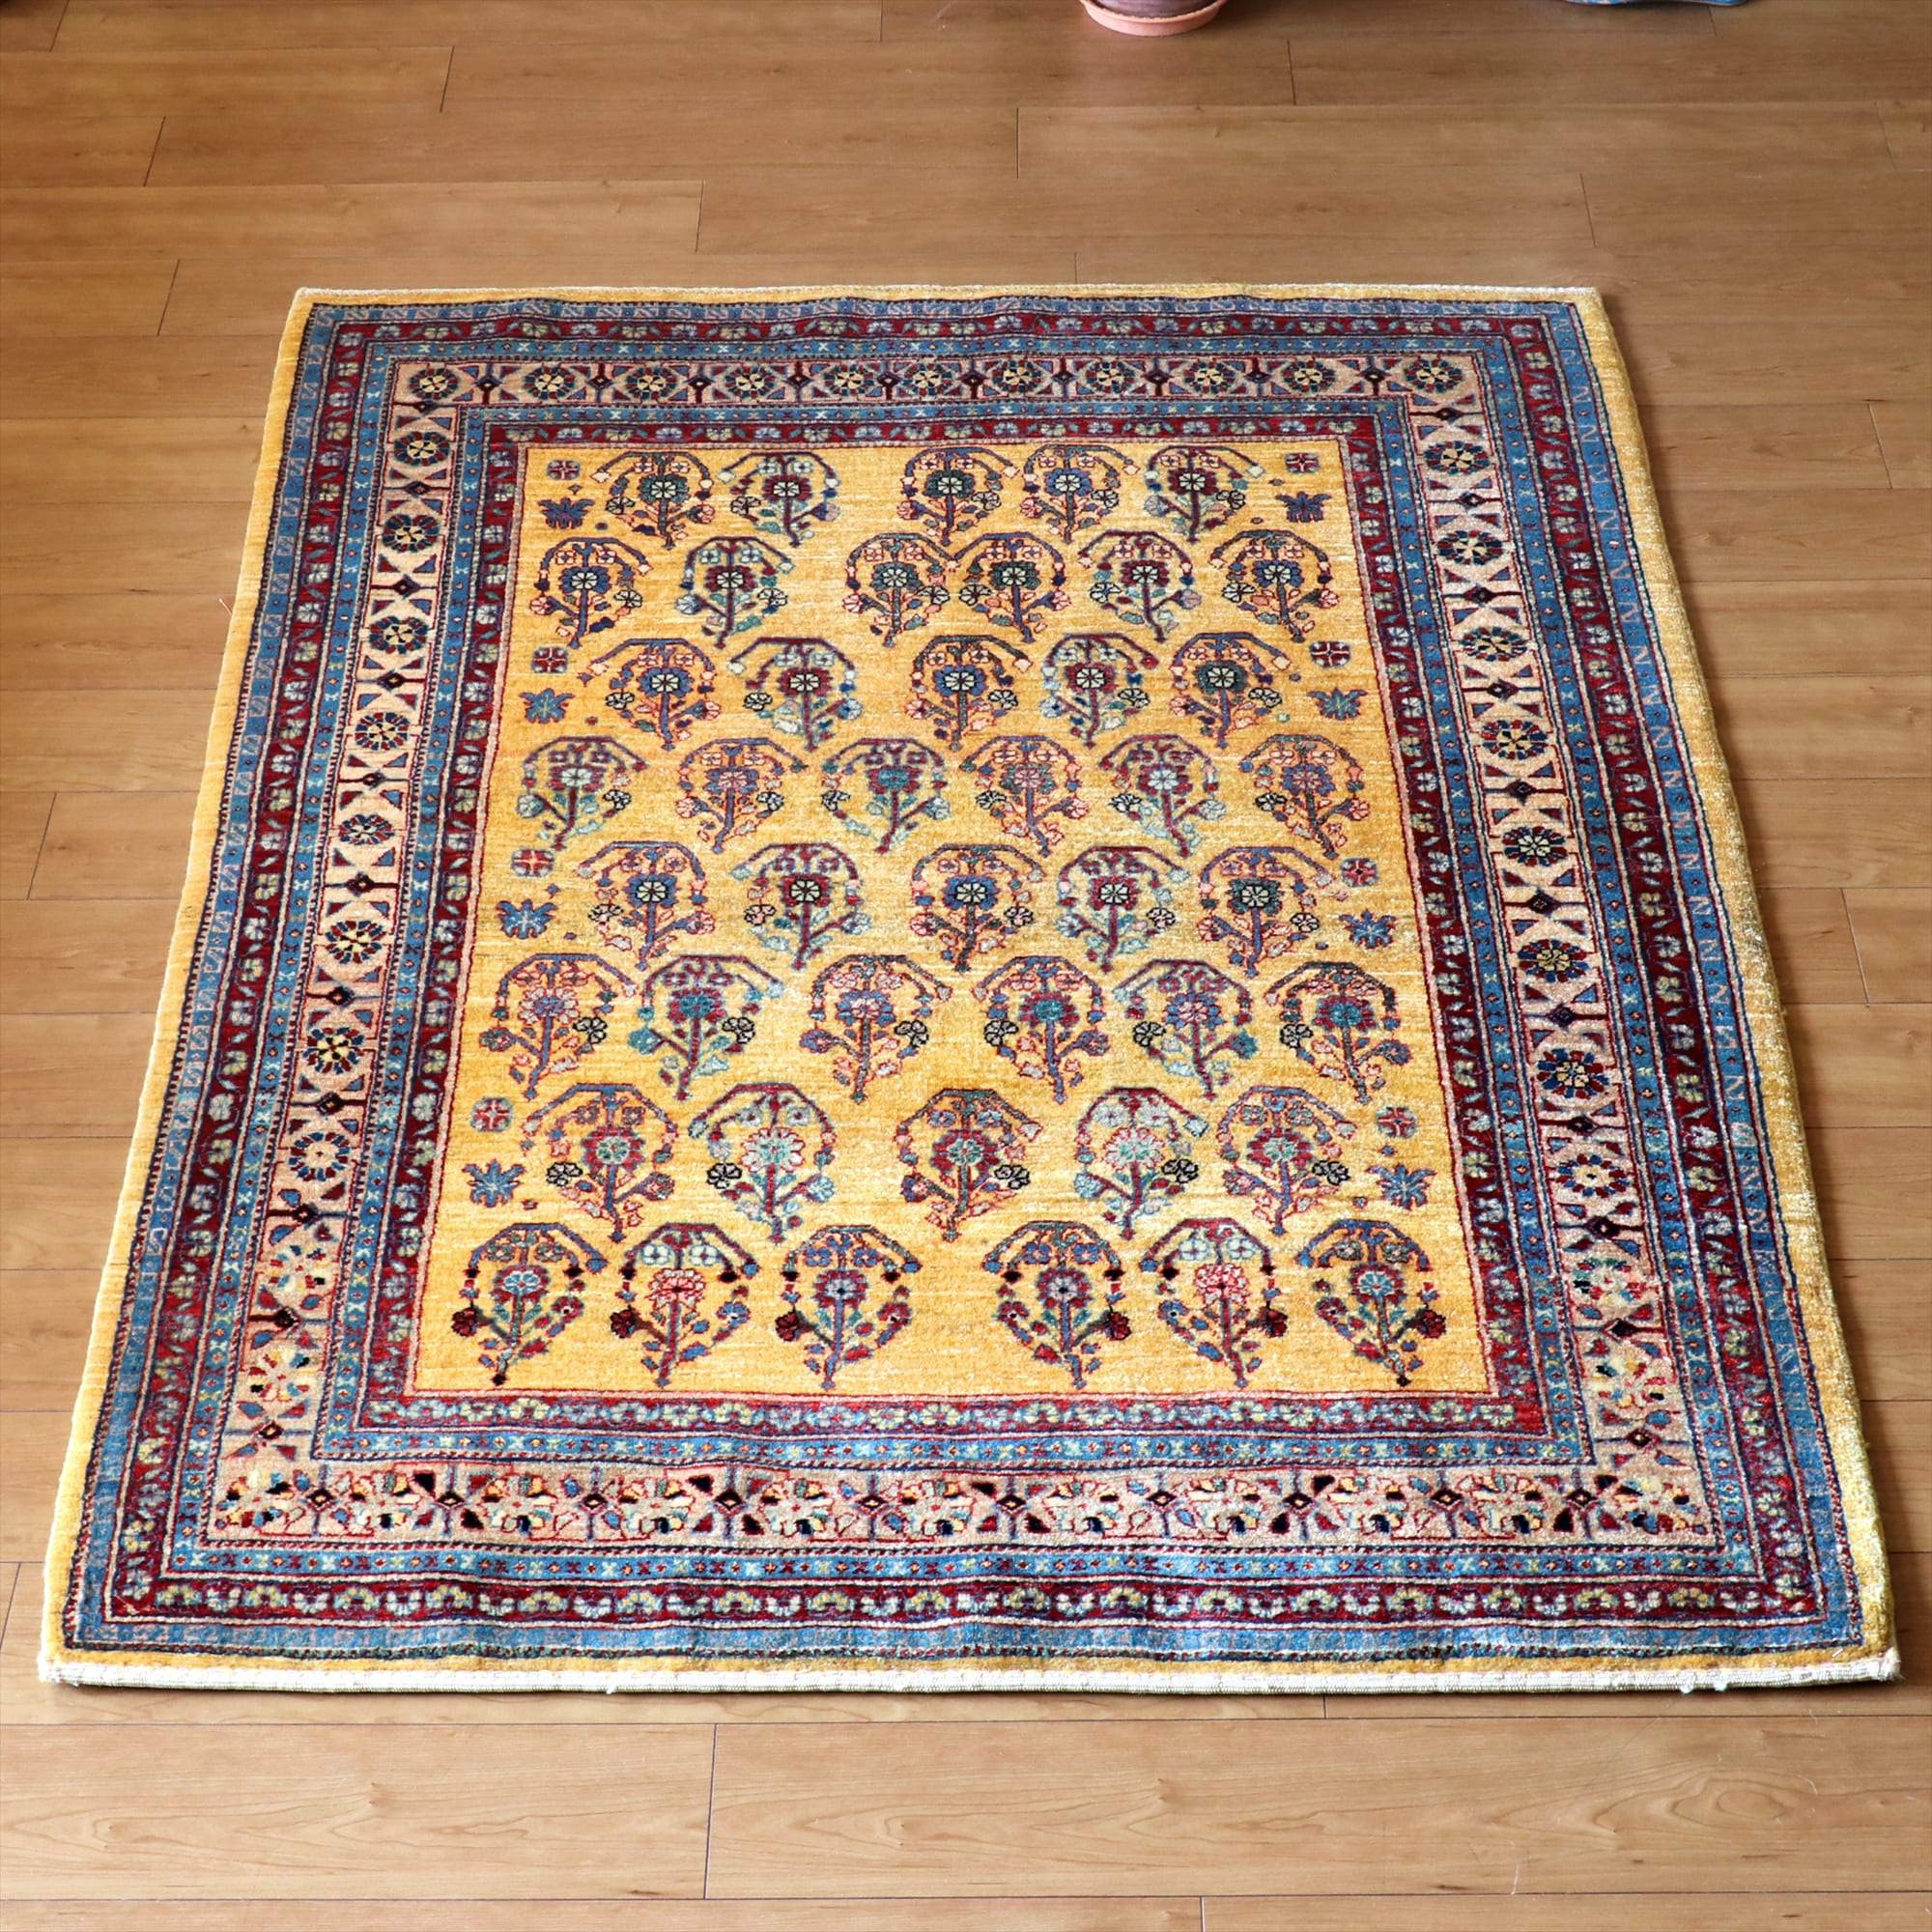 ギャベ ギャッベ・ルリバフ・カシュカイ族の手織りラグ・細かな織りの伝統柄・センターラグサイズ イエロー・クラシカルデザインの花模様